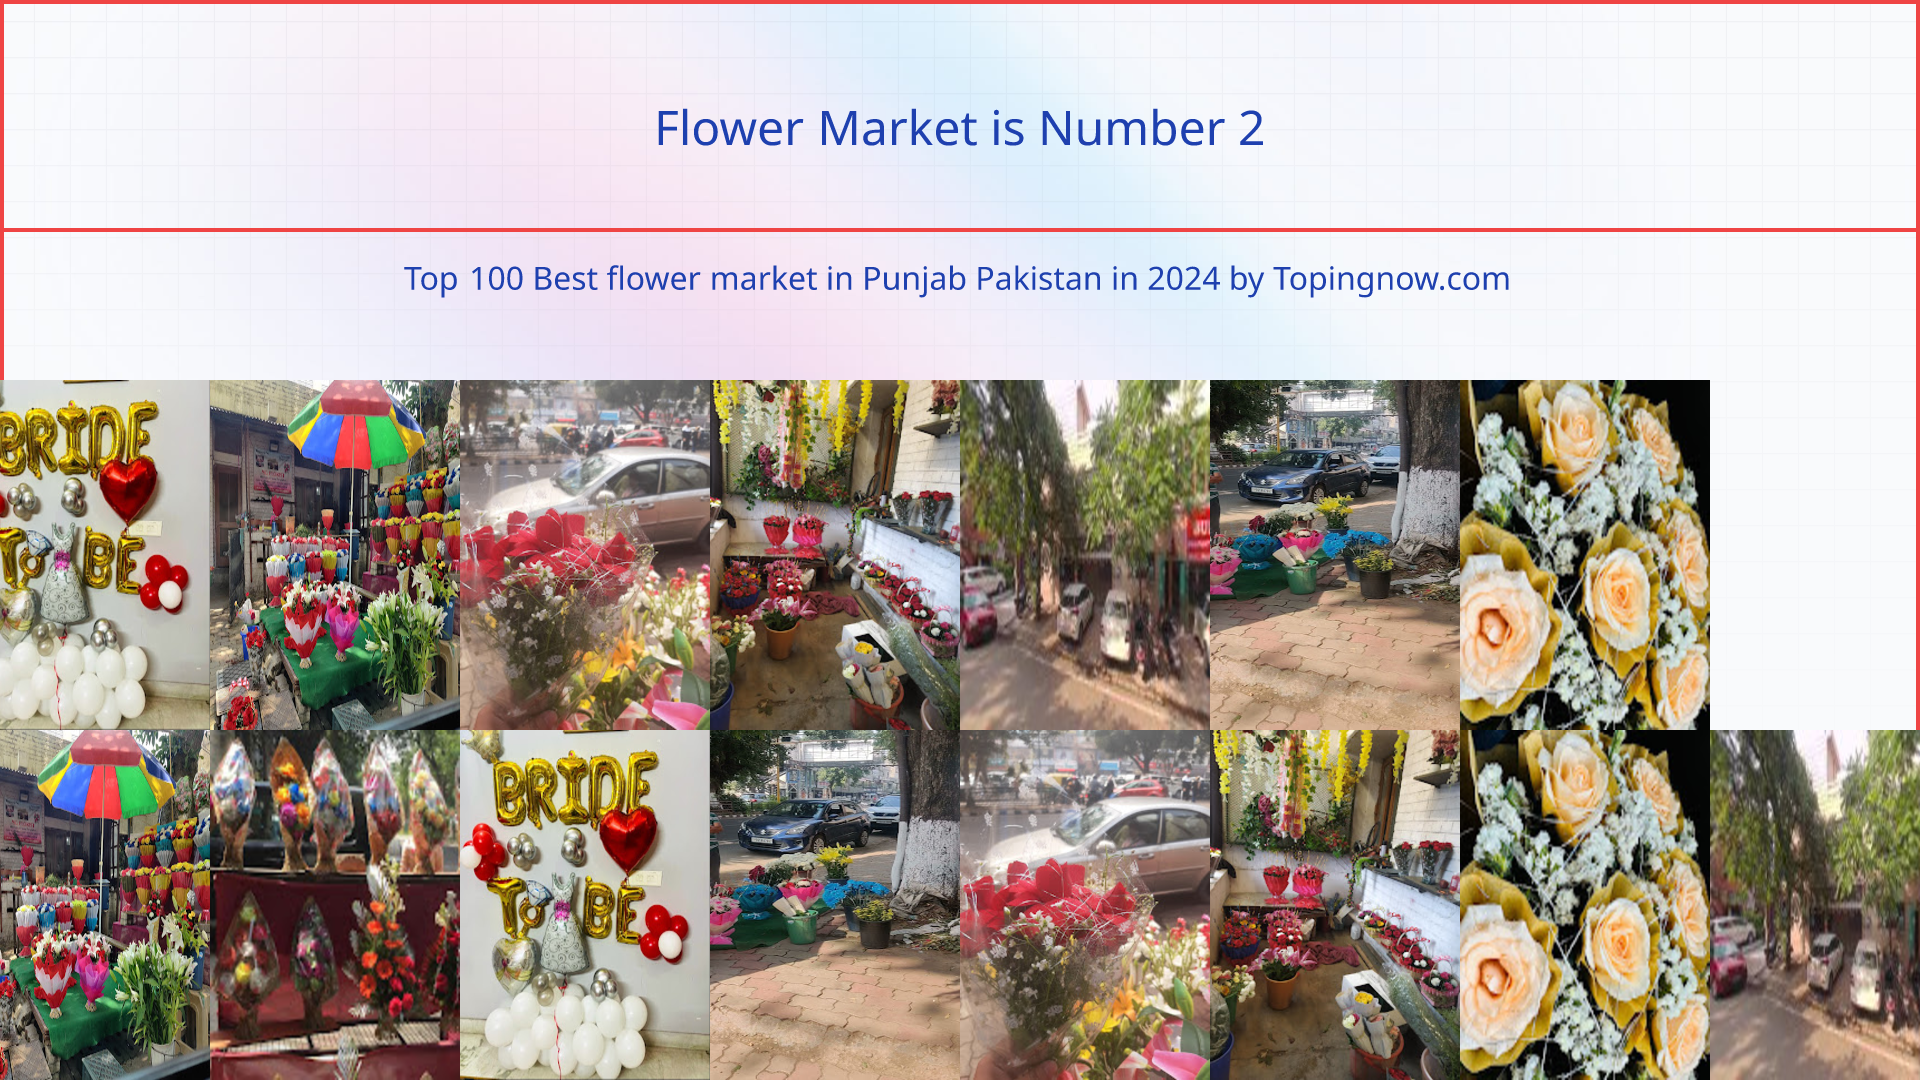 Flower Market: Top 100 Best flower market in Punjab Pakistan in 2024